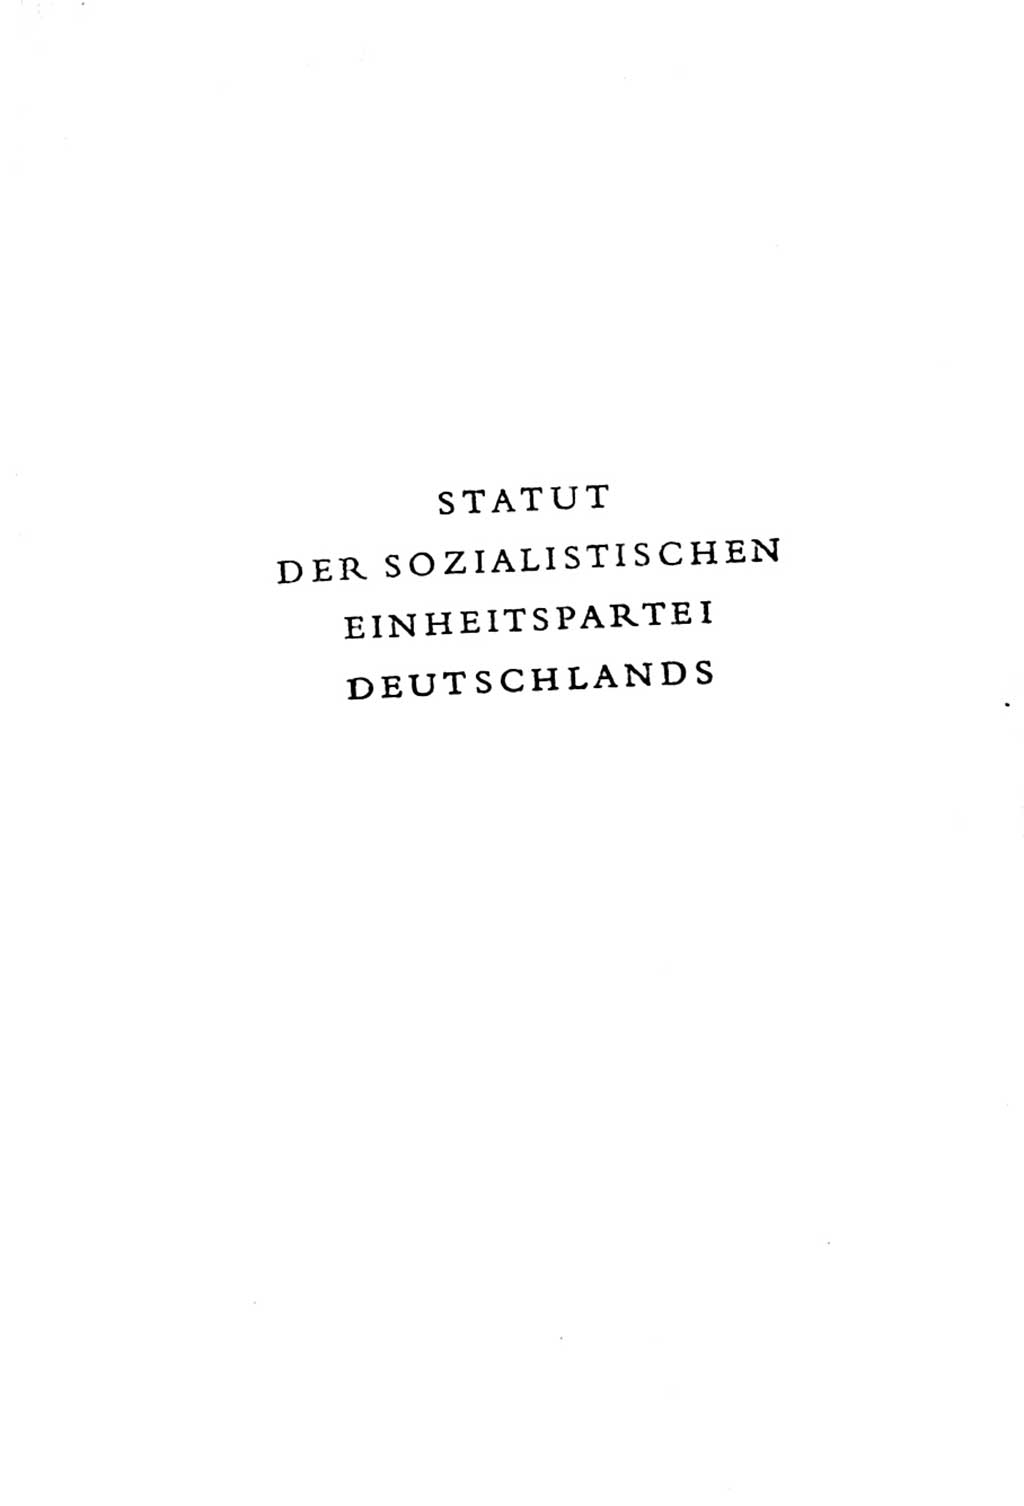 Statut der Sozialistischen Einheitspartei Deutschlands (SED) 1963, Seite 1 (St. SED DDR 1963, S. 1)